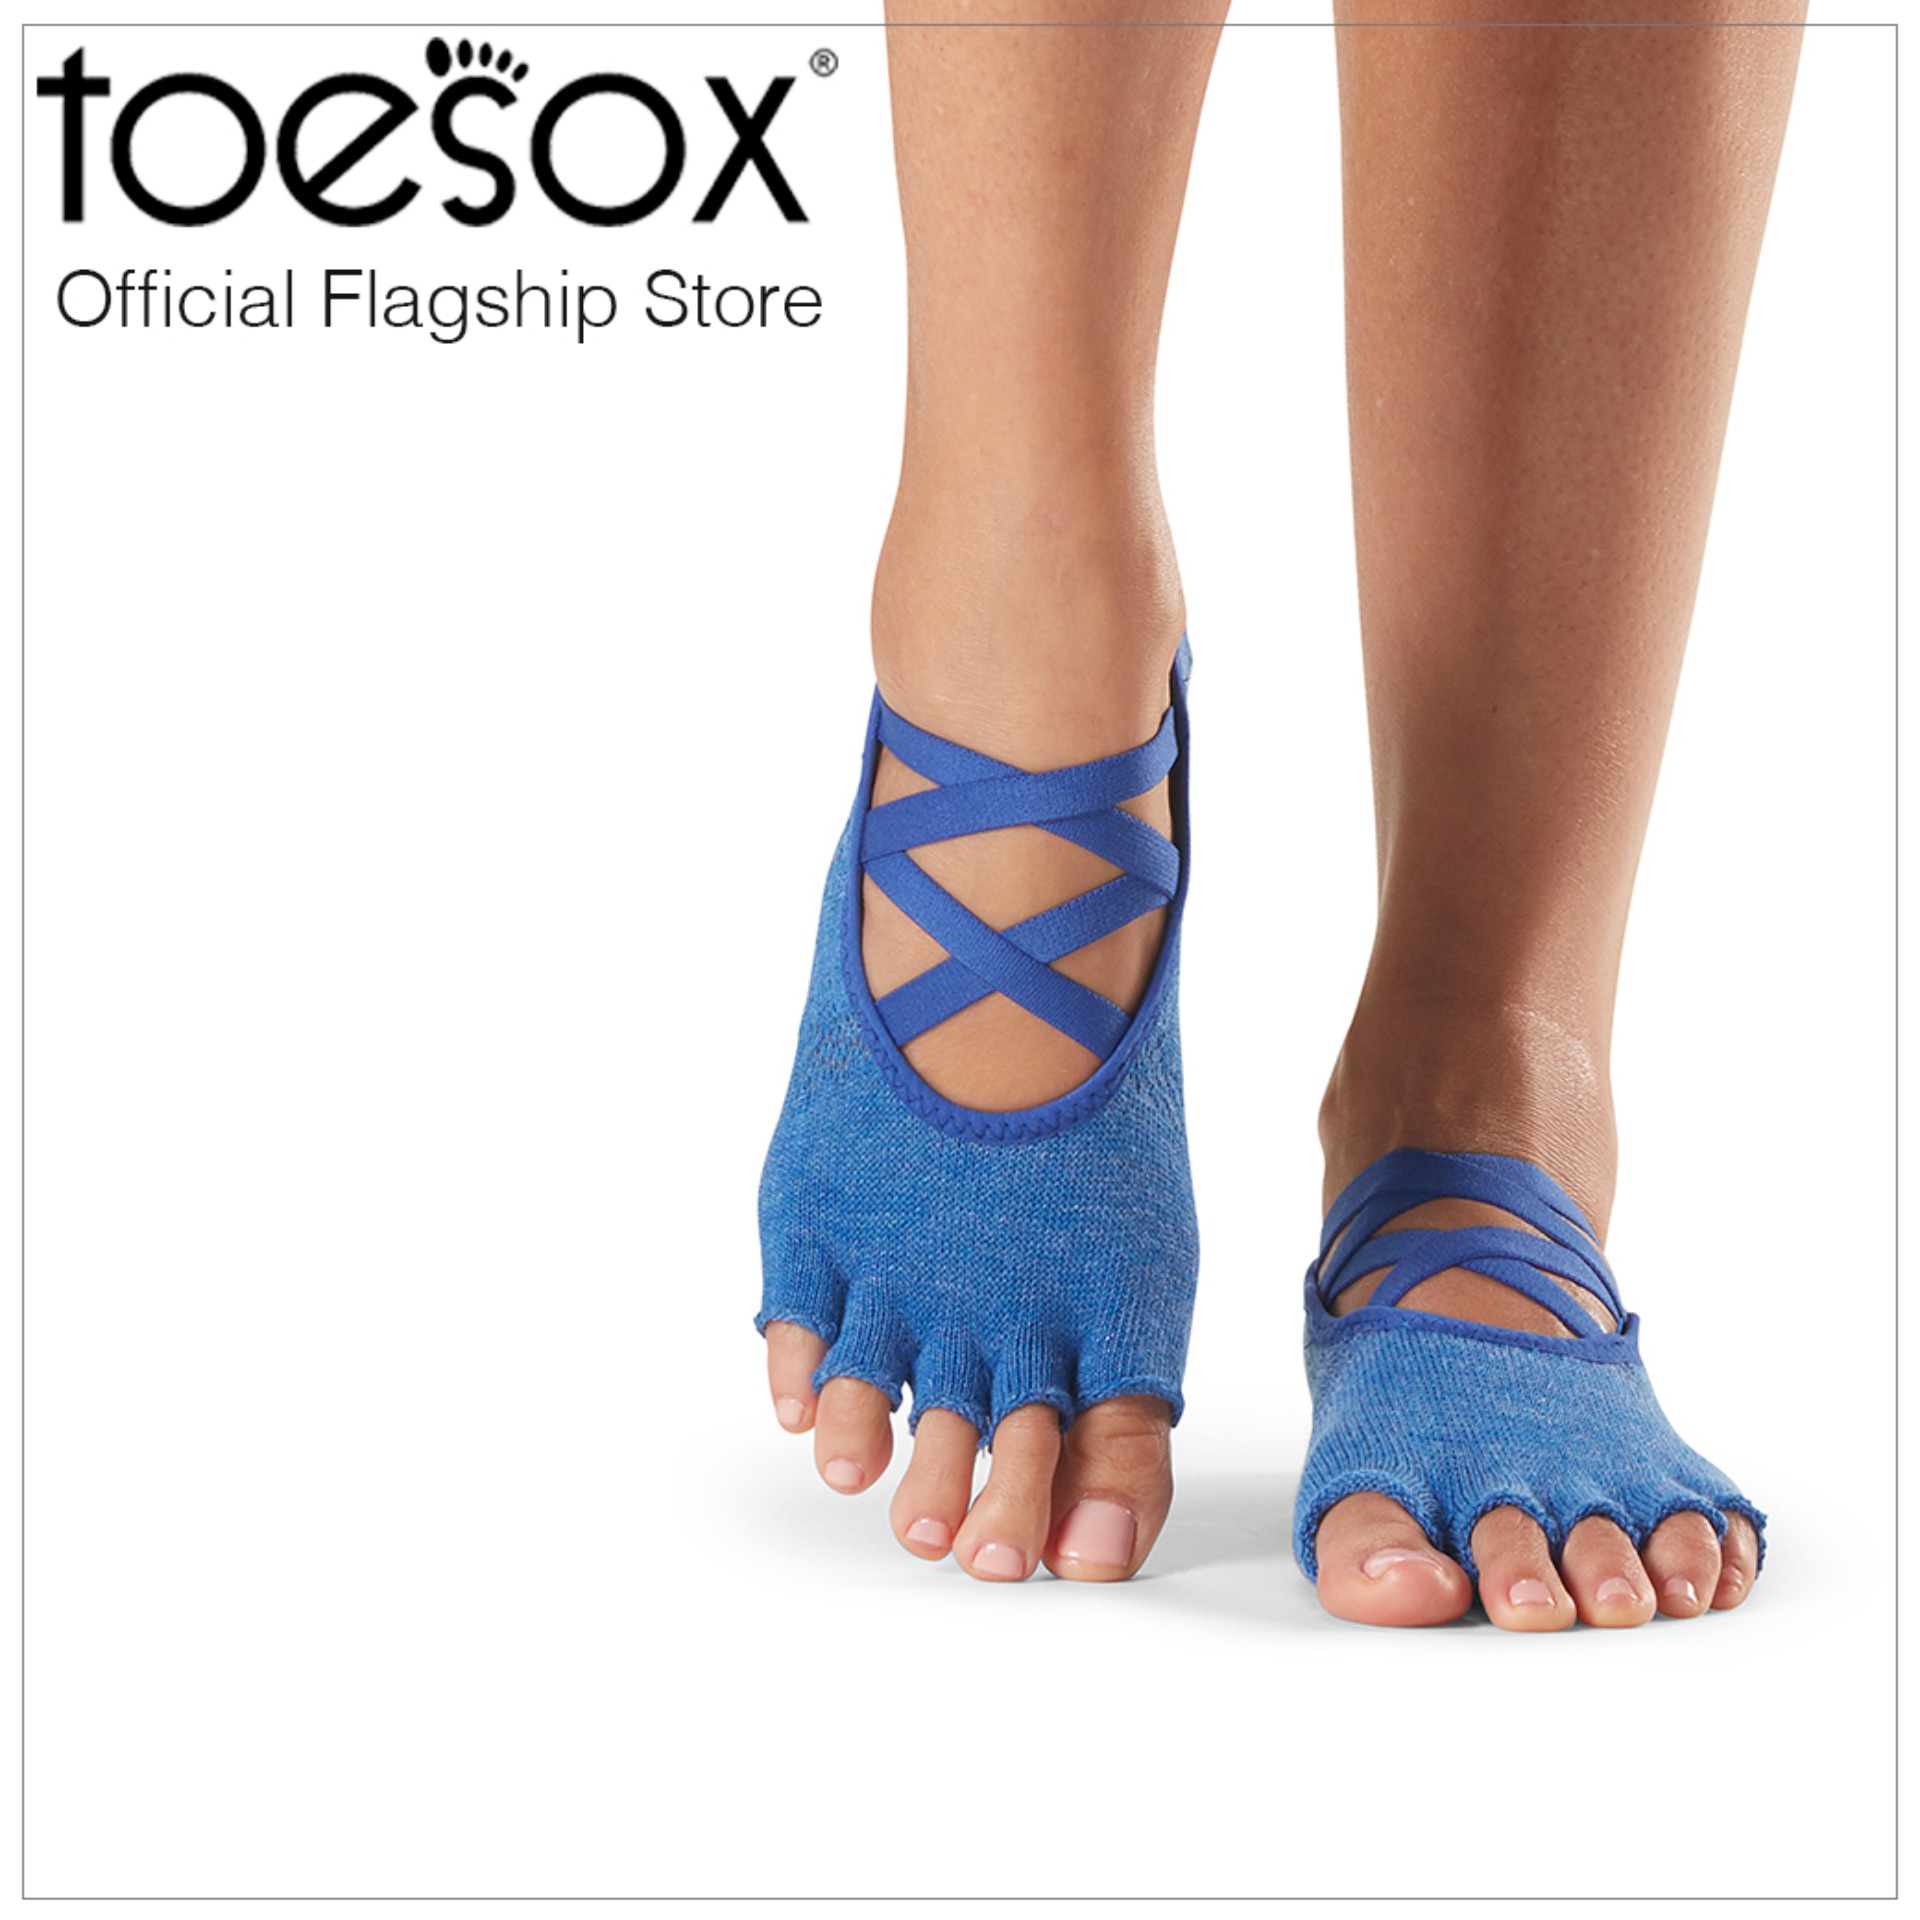 ToeSox โทซอคส์ ถุงเท้ากันลื่นแยกนิ้วสายไขว้ รุ่น Elle เปิดนิ้วเท้า